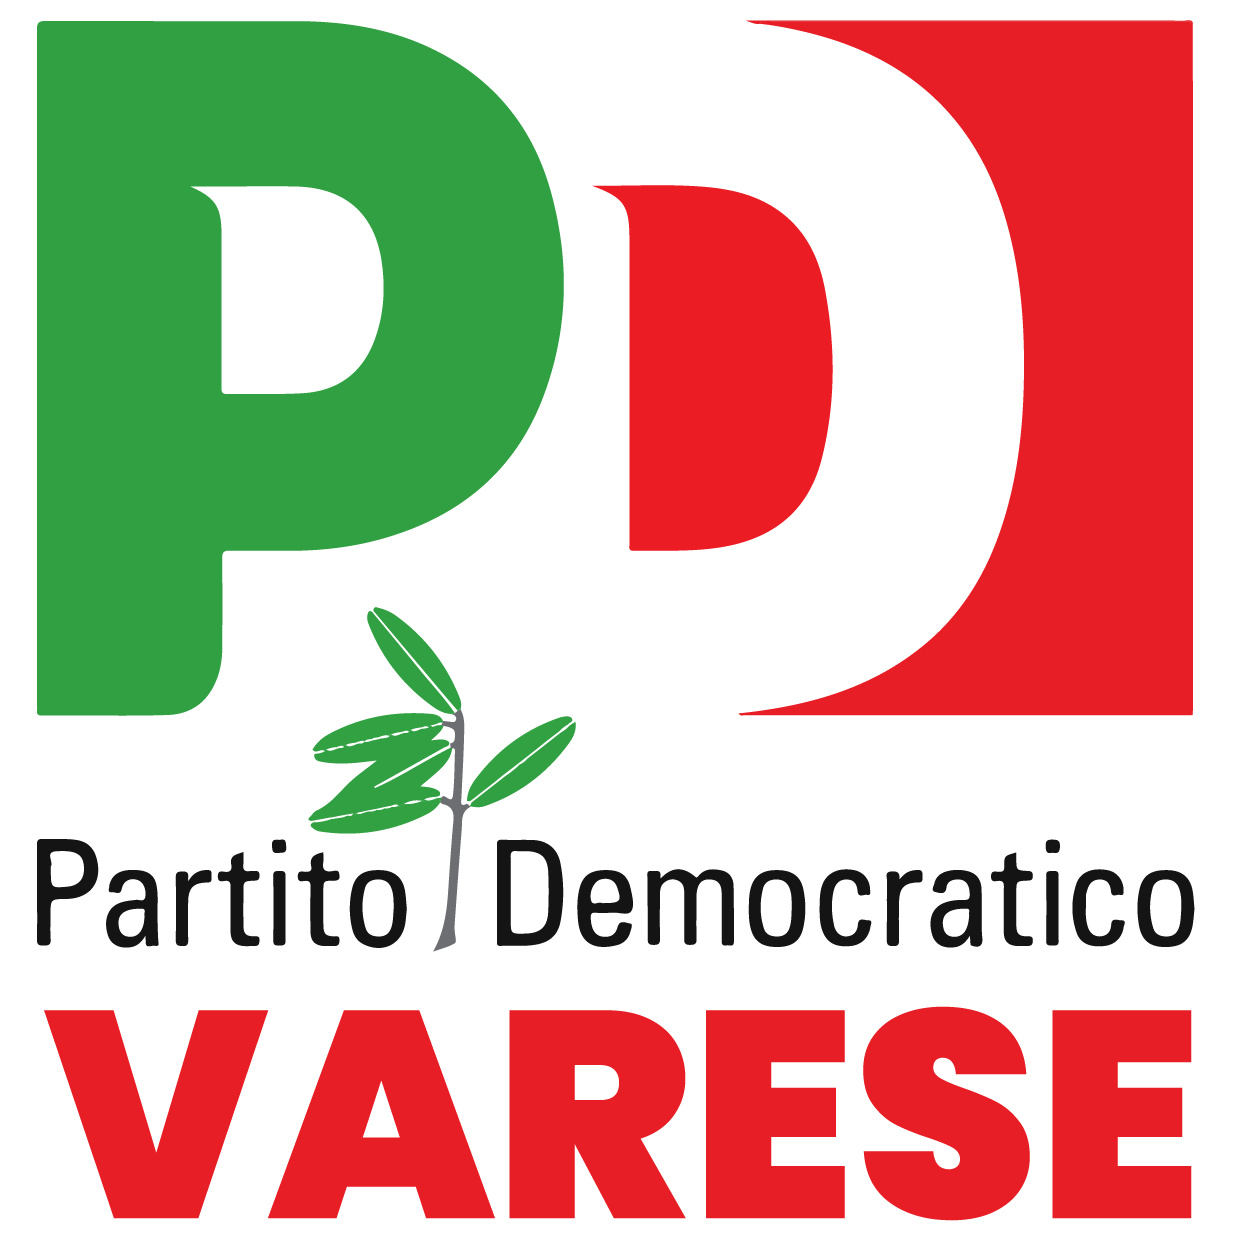 PD Varese